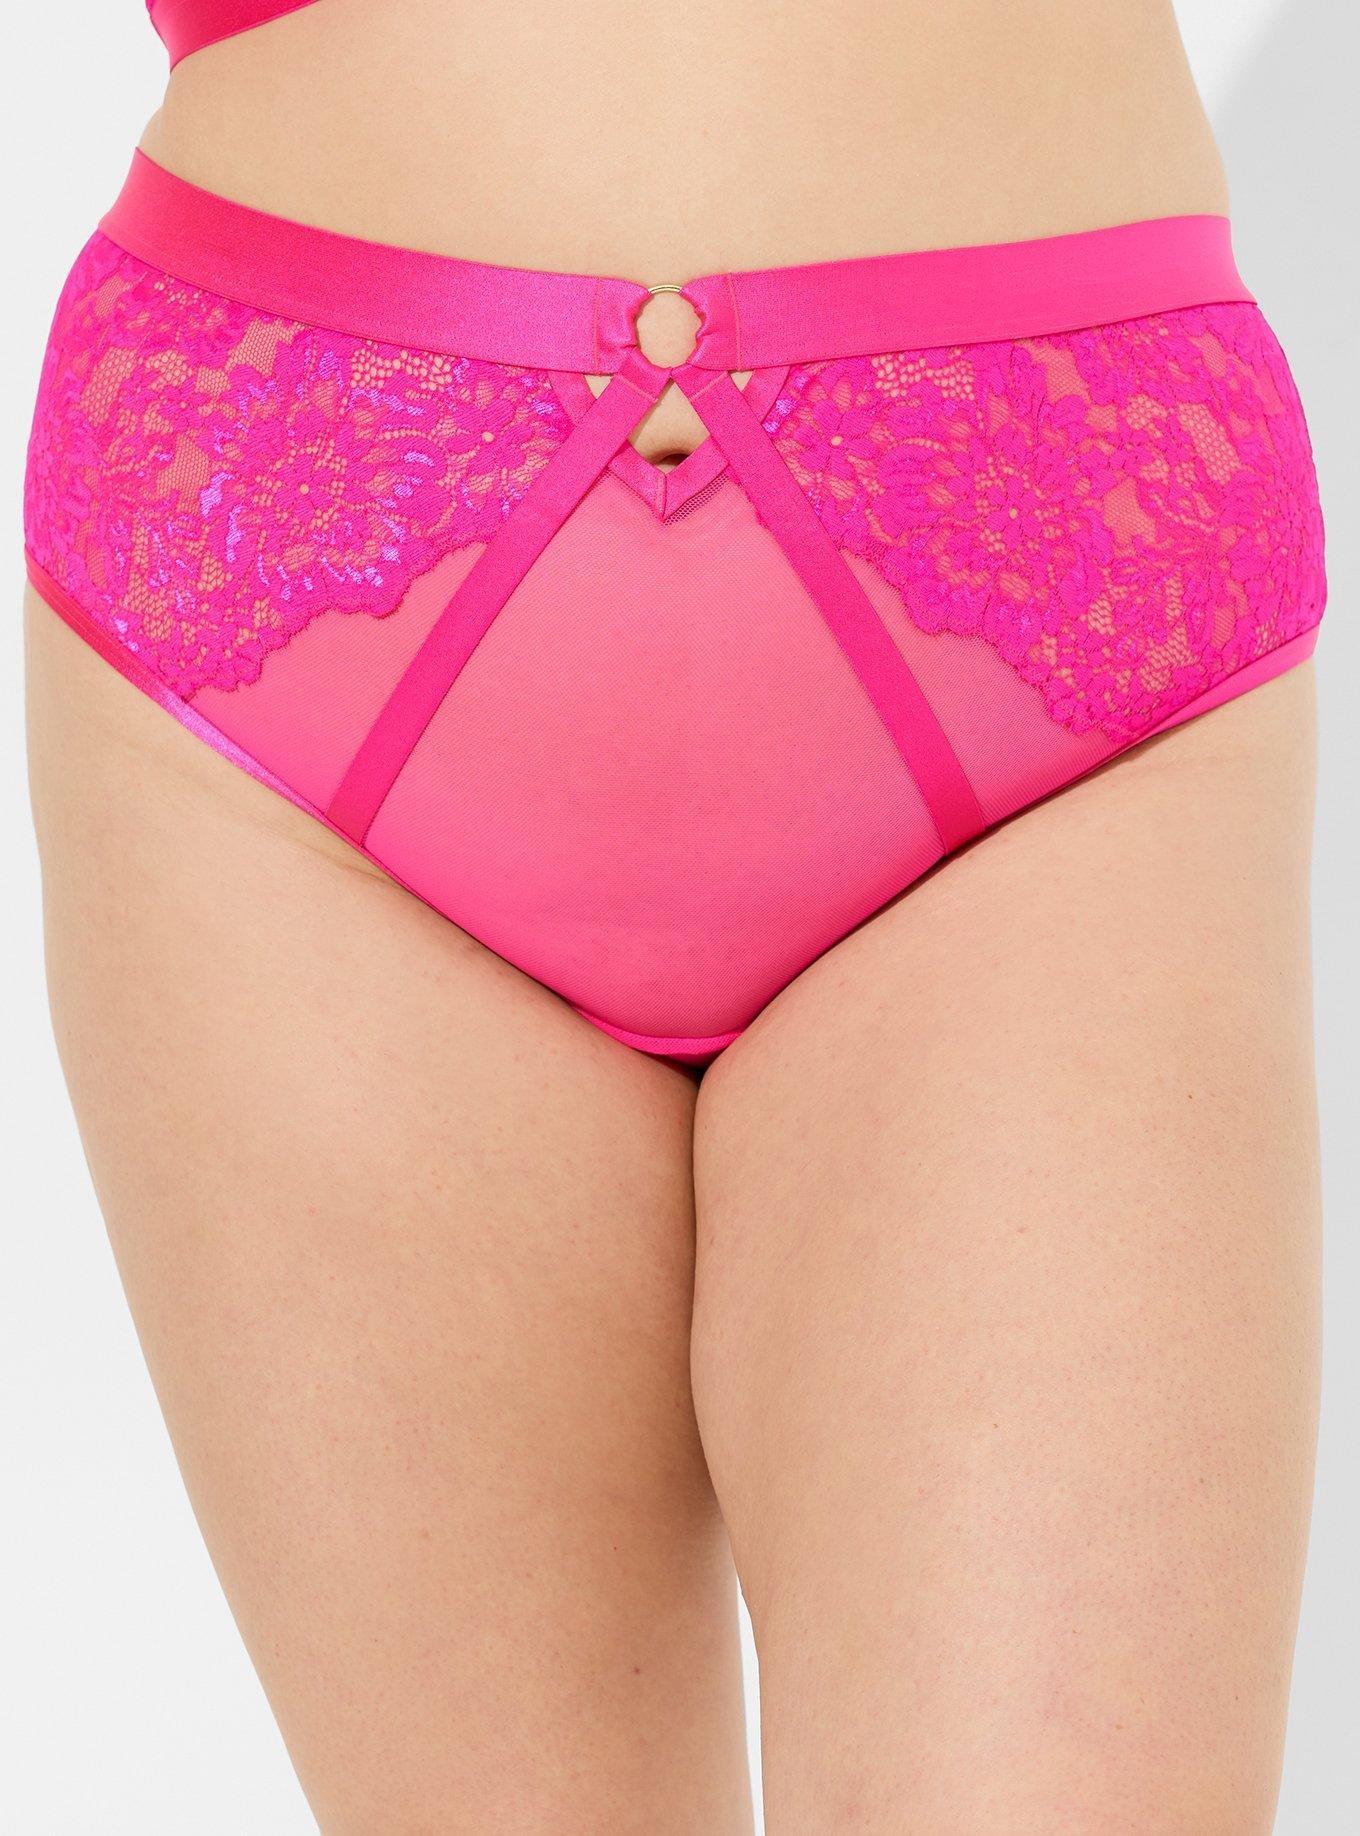 Victoria's Secret Victoria's Secret Lace Strappy Thong Underwear 10.50